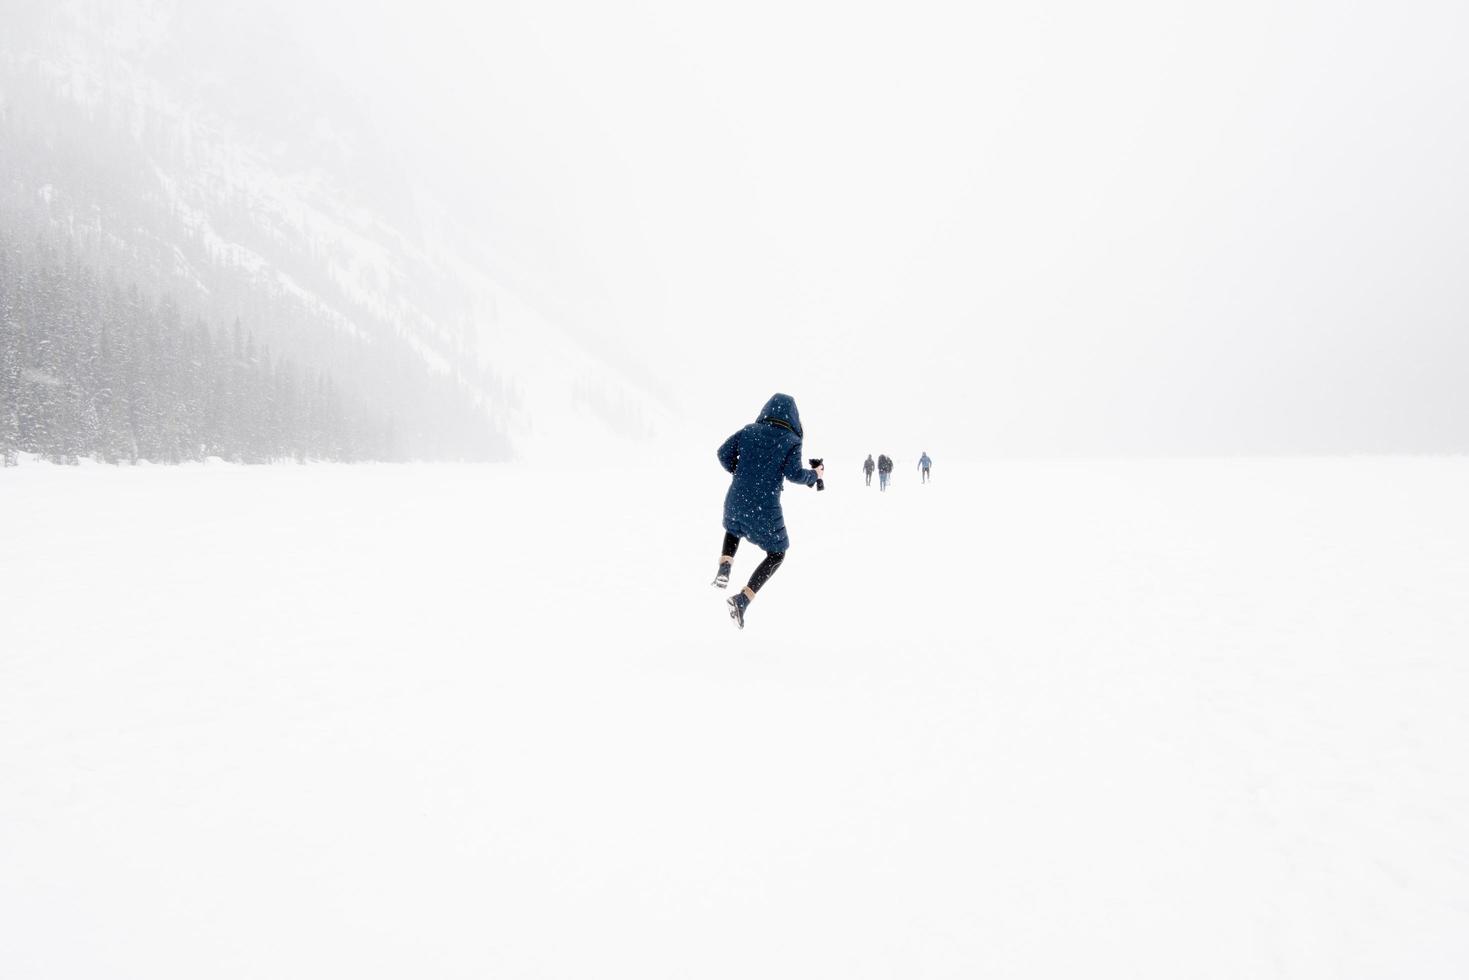 jeune sautant en l'air dans un paysage hivernal avec de la neige. lac gelé louise, parc national banff, canada photo